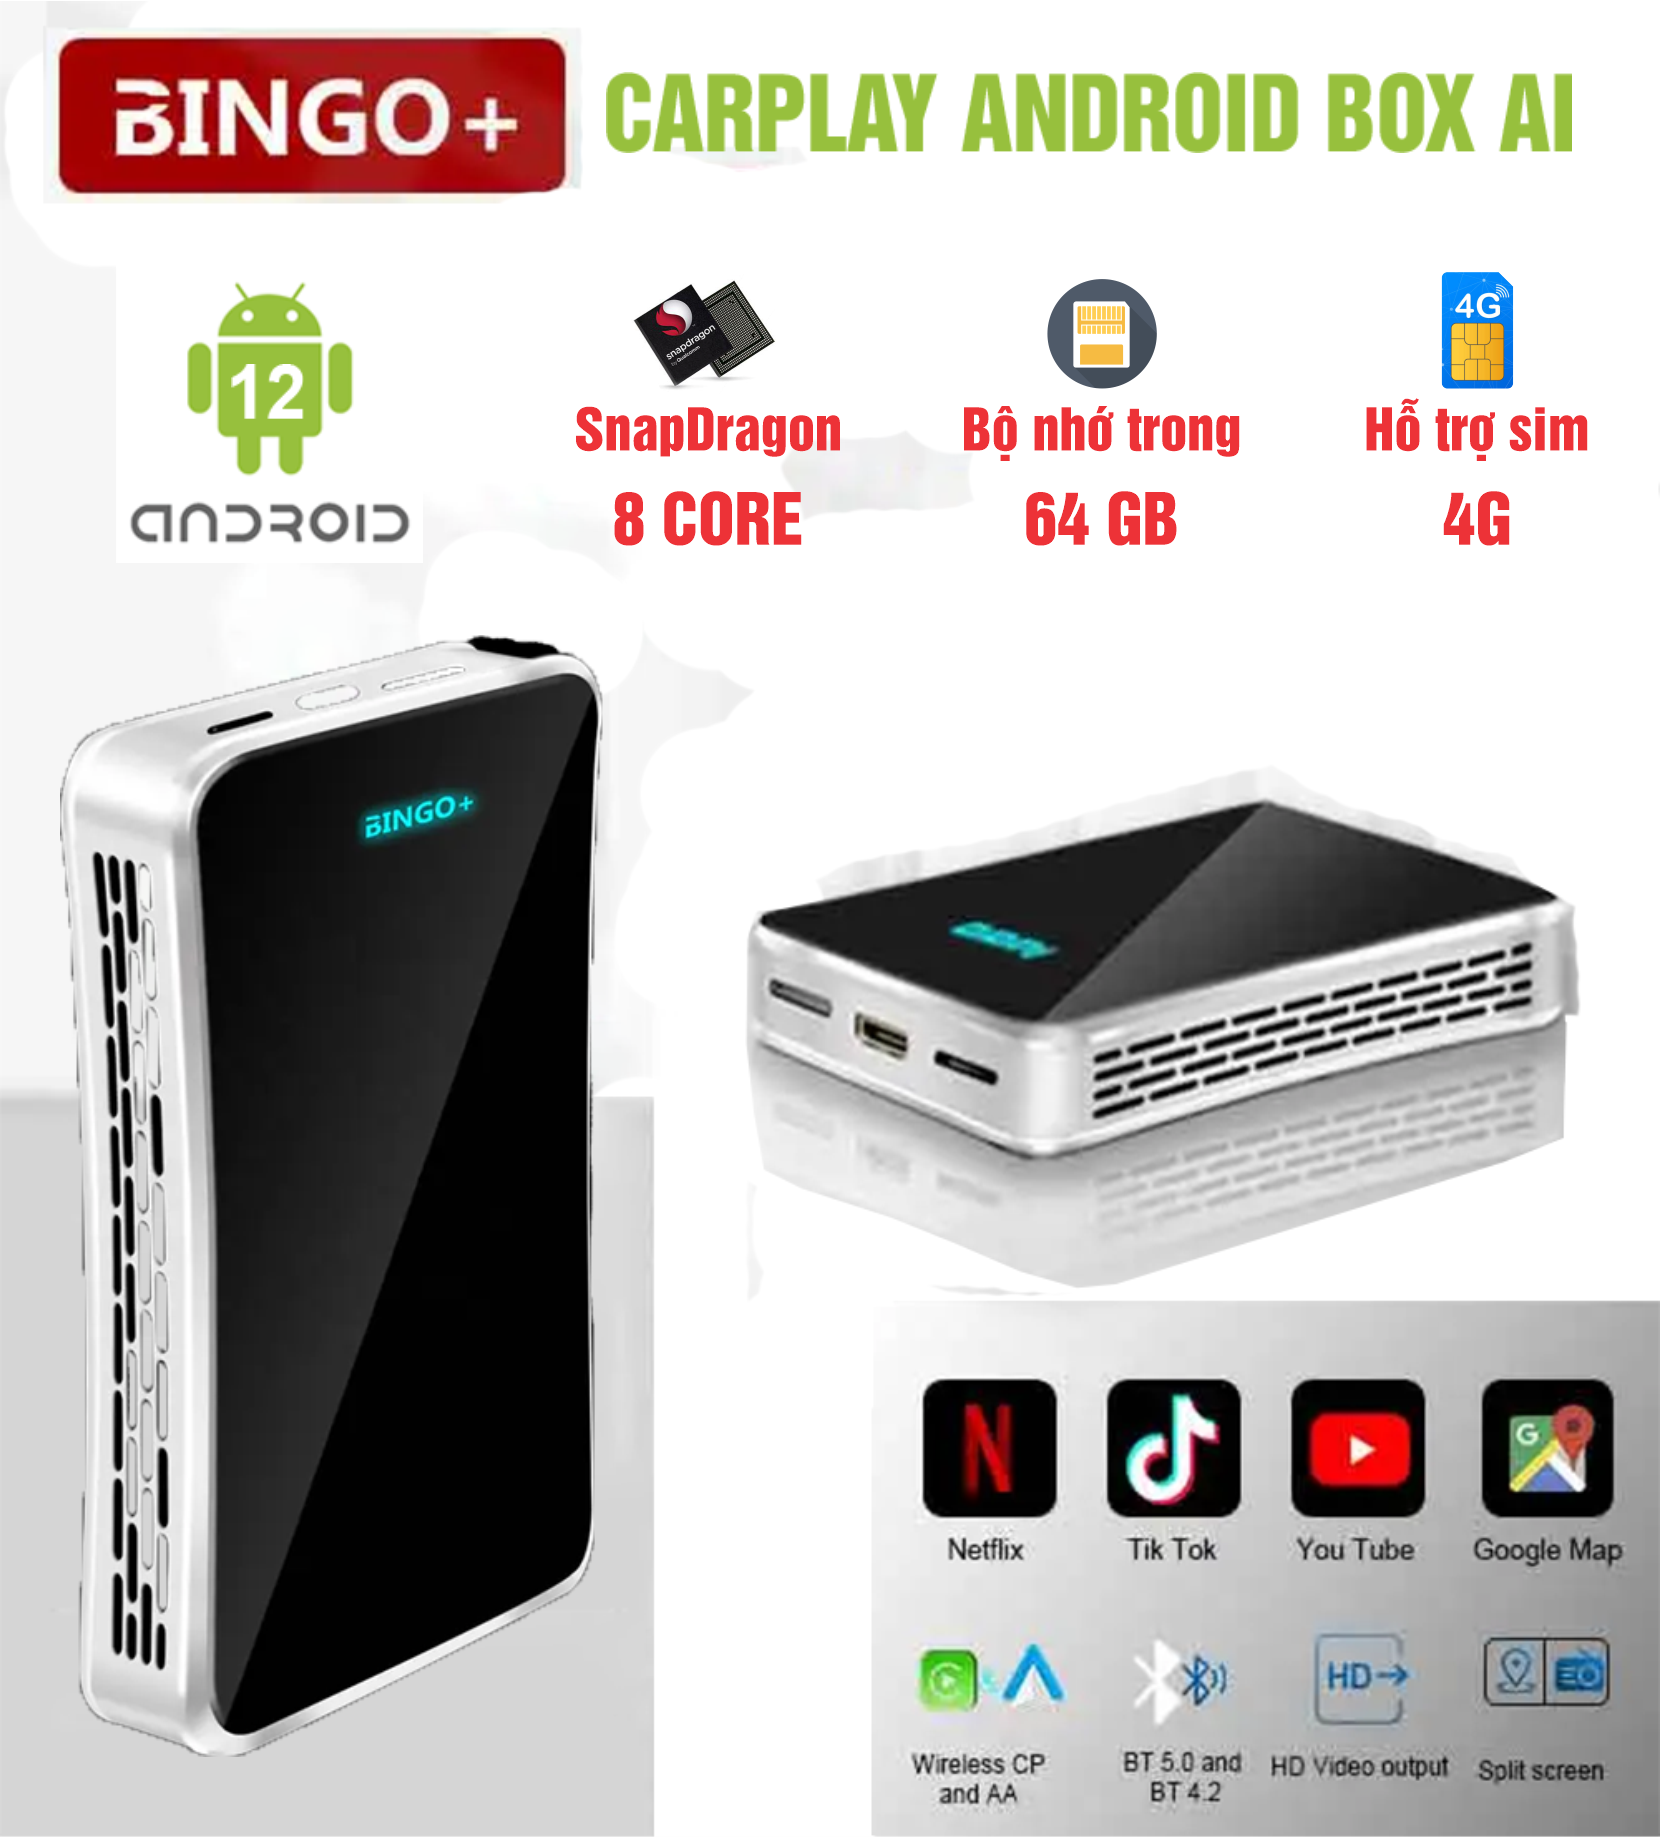 Carplay Box AI Adapter BINGO - Biến Màn Hình Nguyên Bản Của Xe Hơi Thành Màn Hình Android Chỉ Bằng Vài Thao Tác Đơn Giản